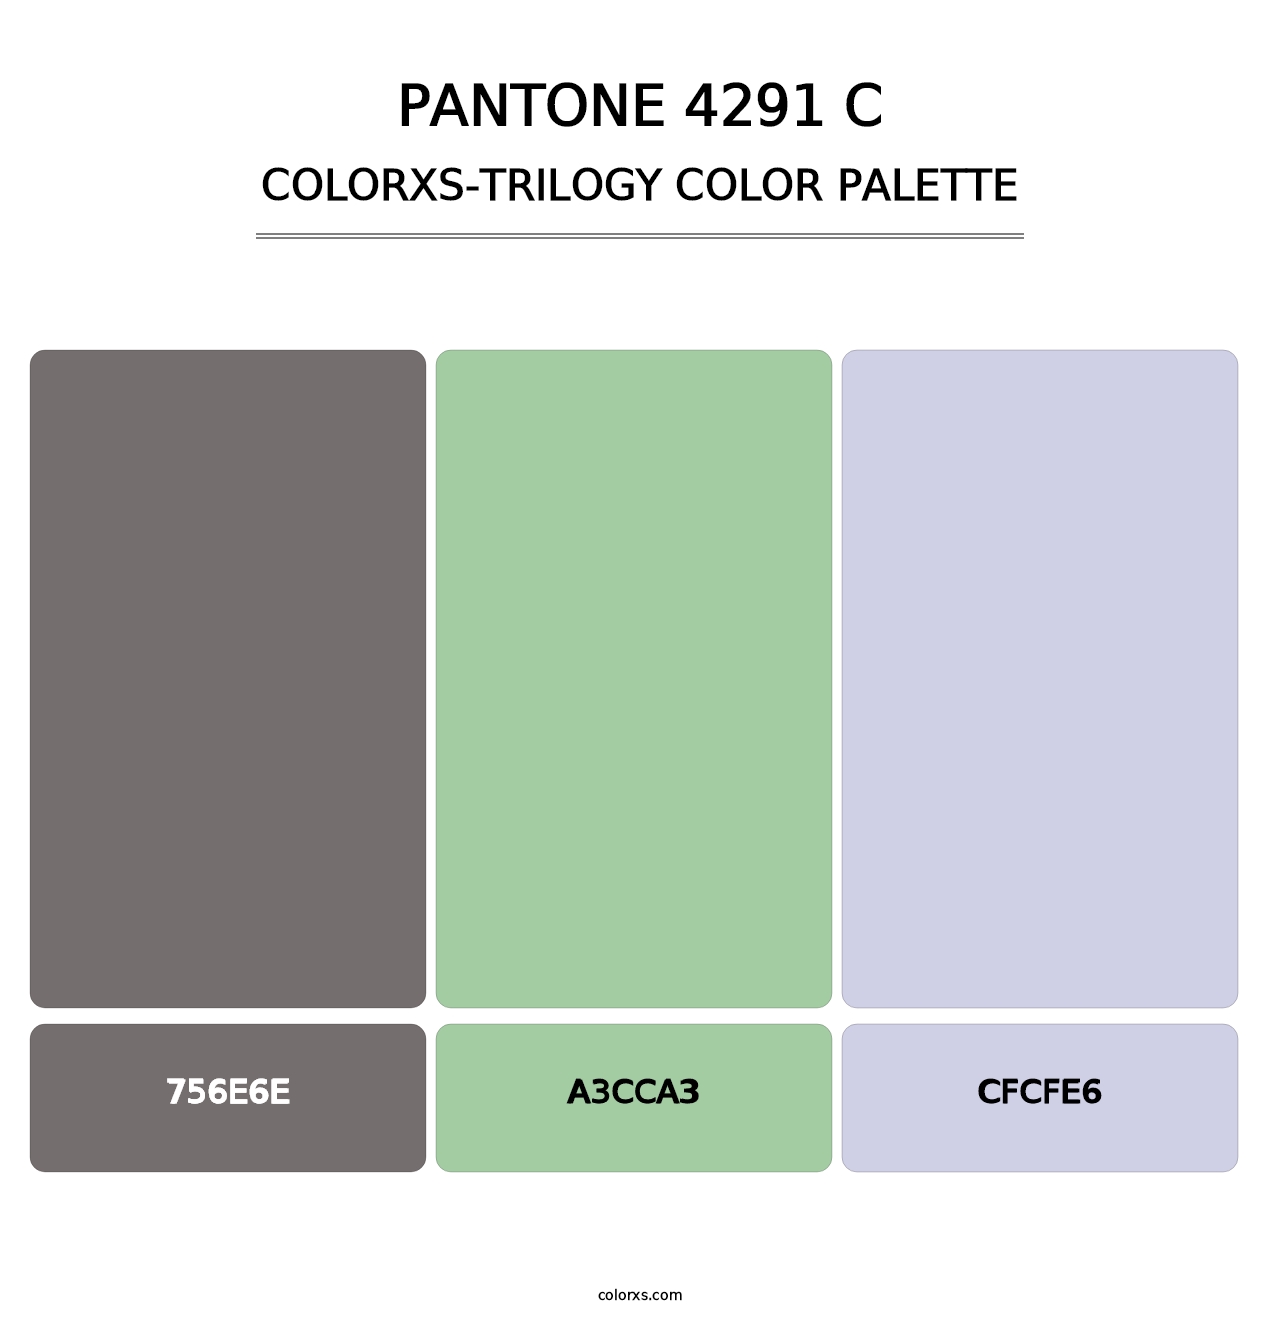 PANTONE 4291 C - Colorxs Trilogy Palette